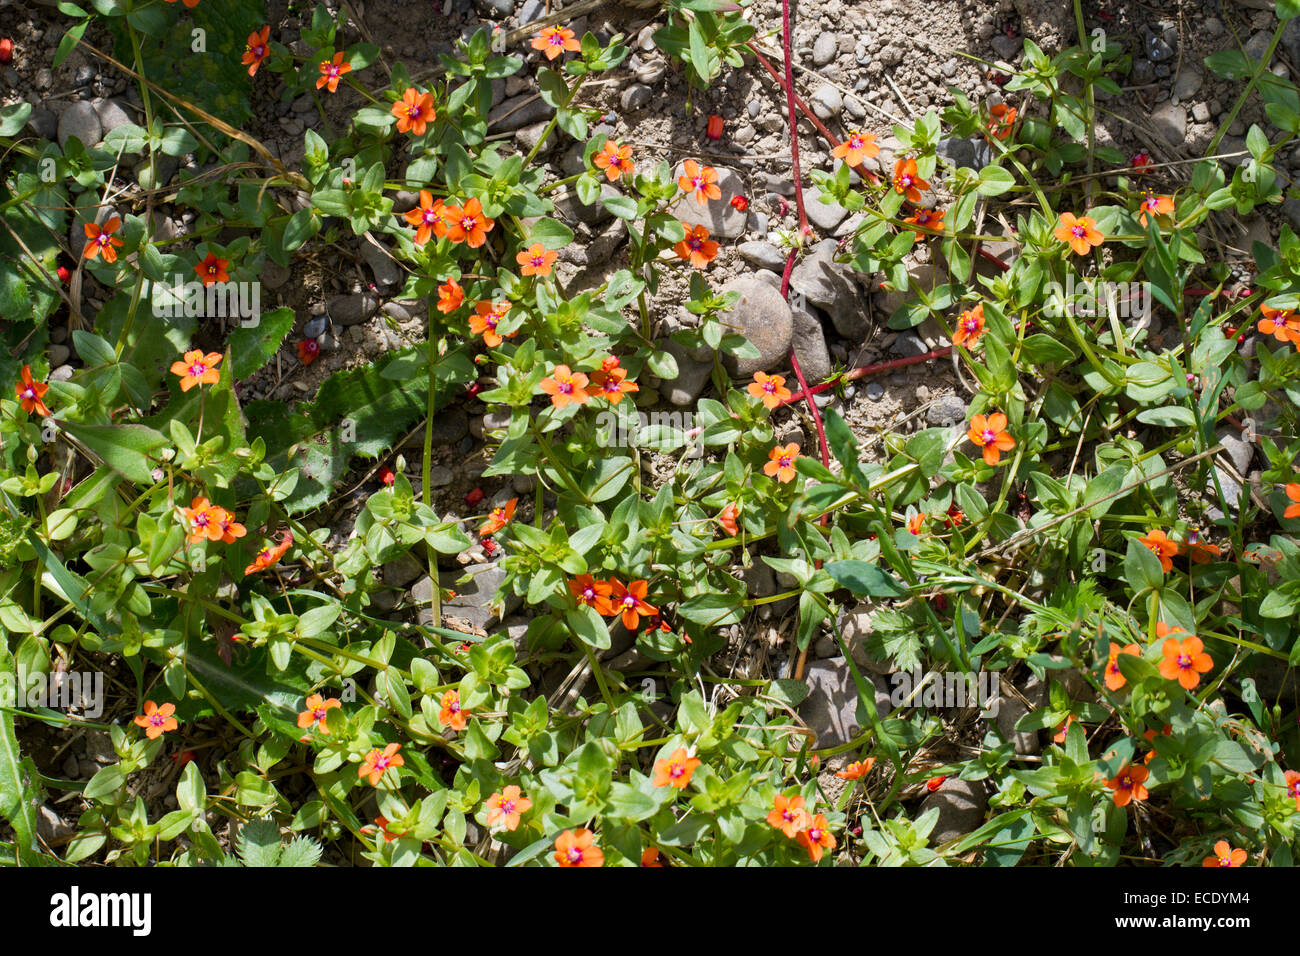 Mouron rouge (Anagallis arvensis) floraison dans un champ arable. Powys, Pays de Galles. Juillet. Banque D'Images